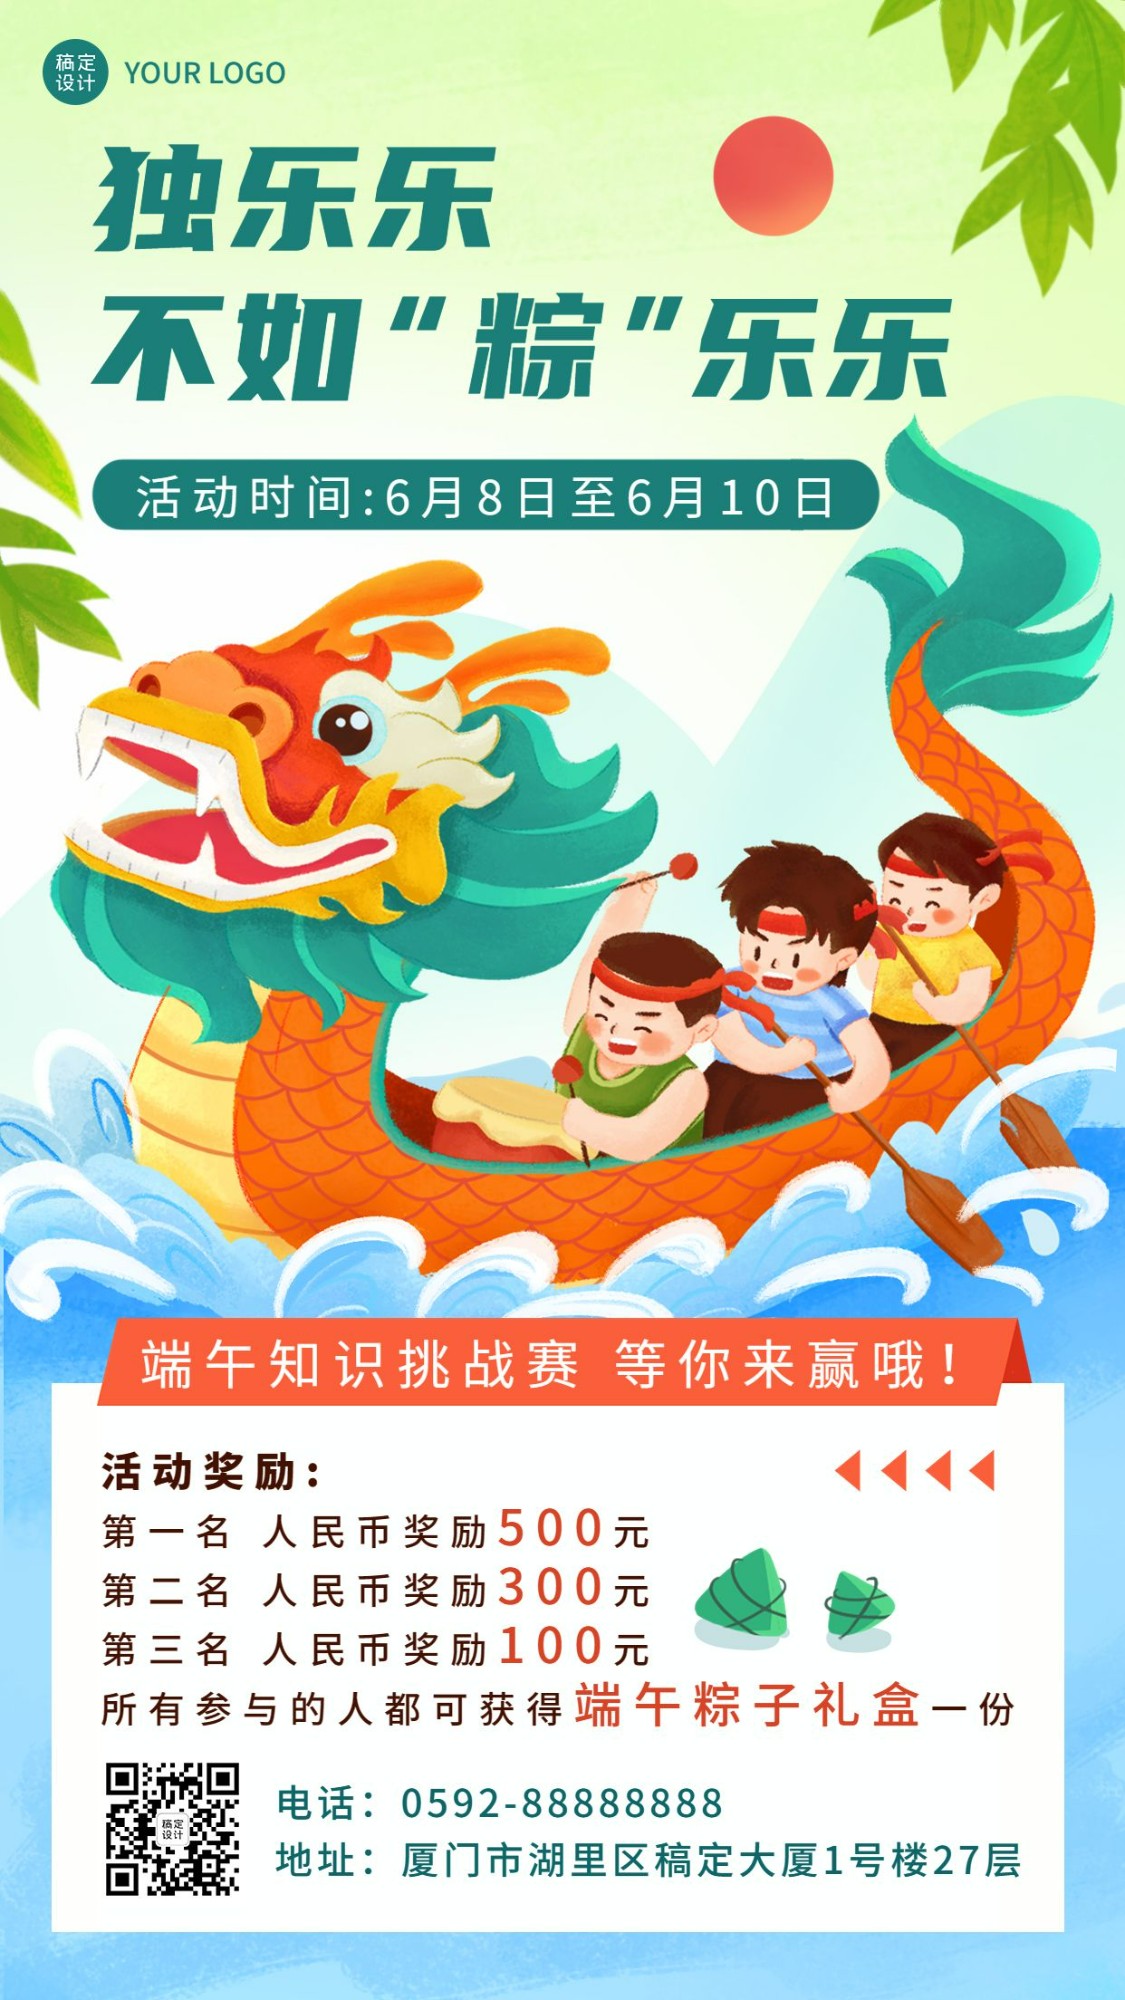 端午节节日竞赛活动插画手机海报